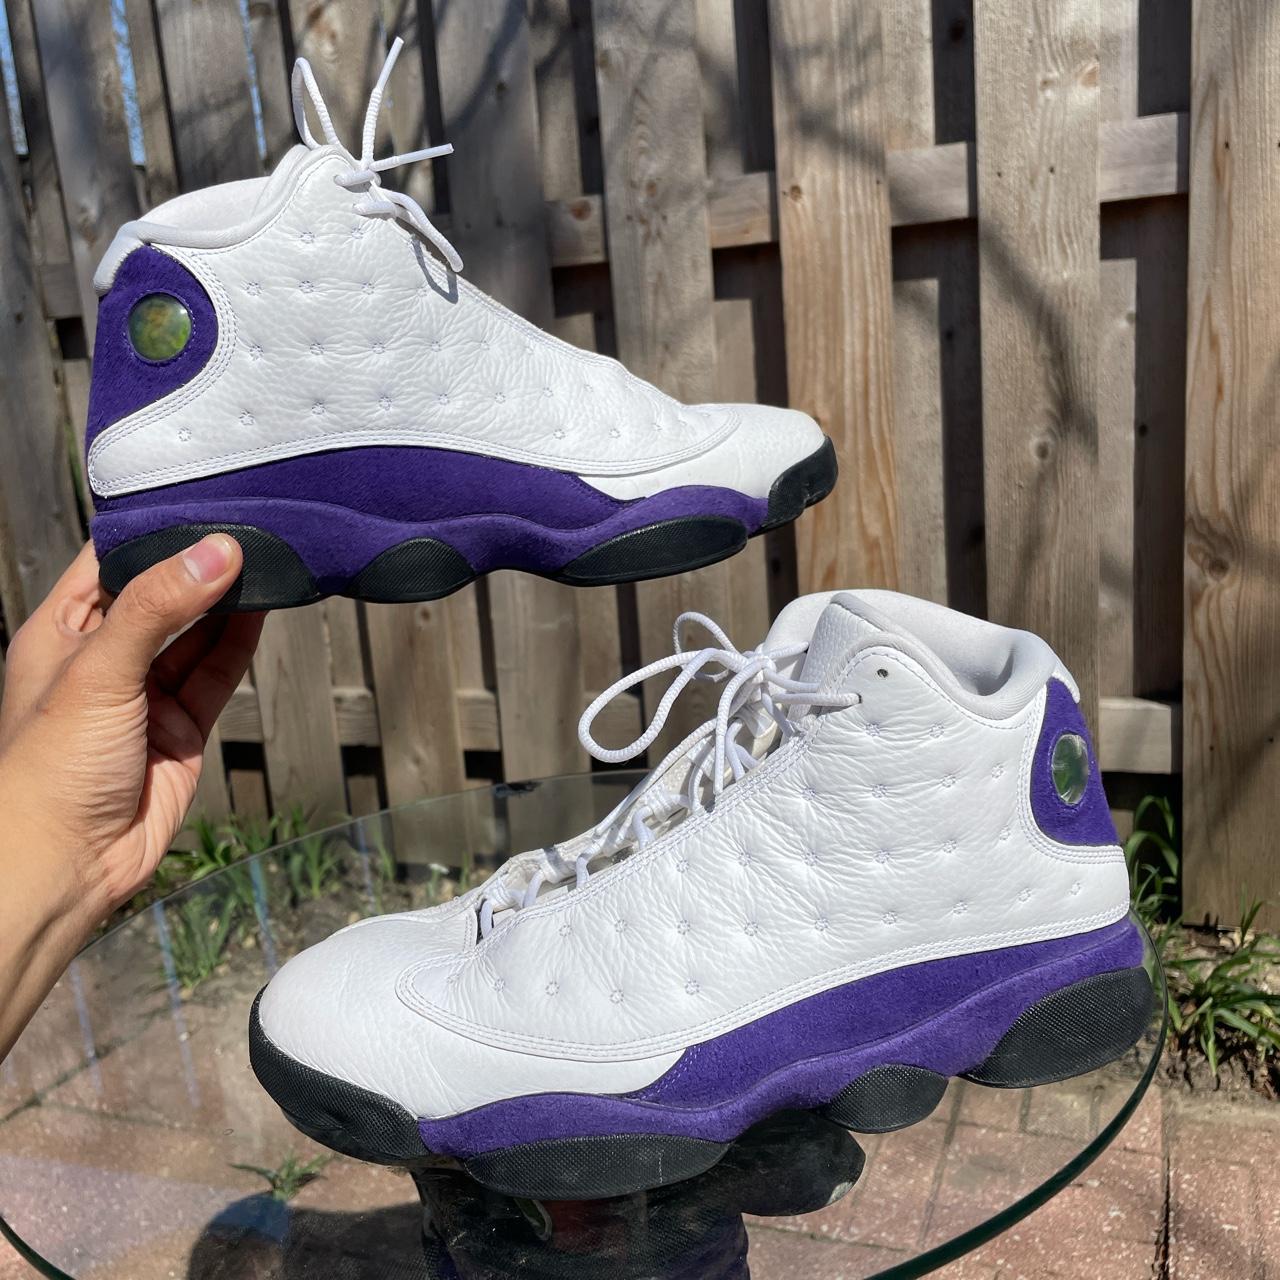 Air Jordan Men's 13 Retro Lakers Shoe